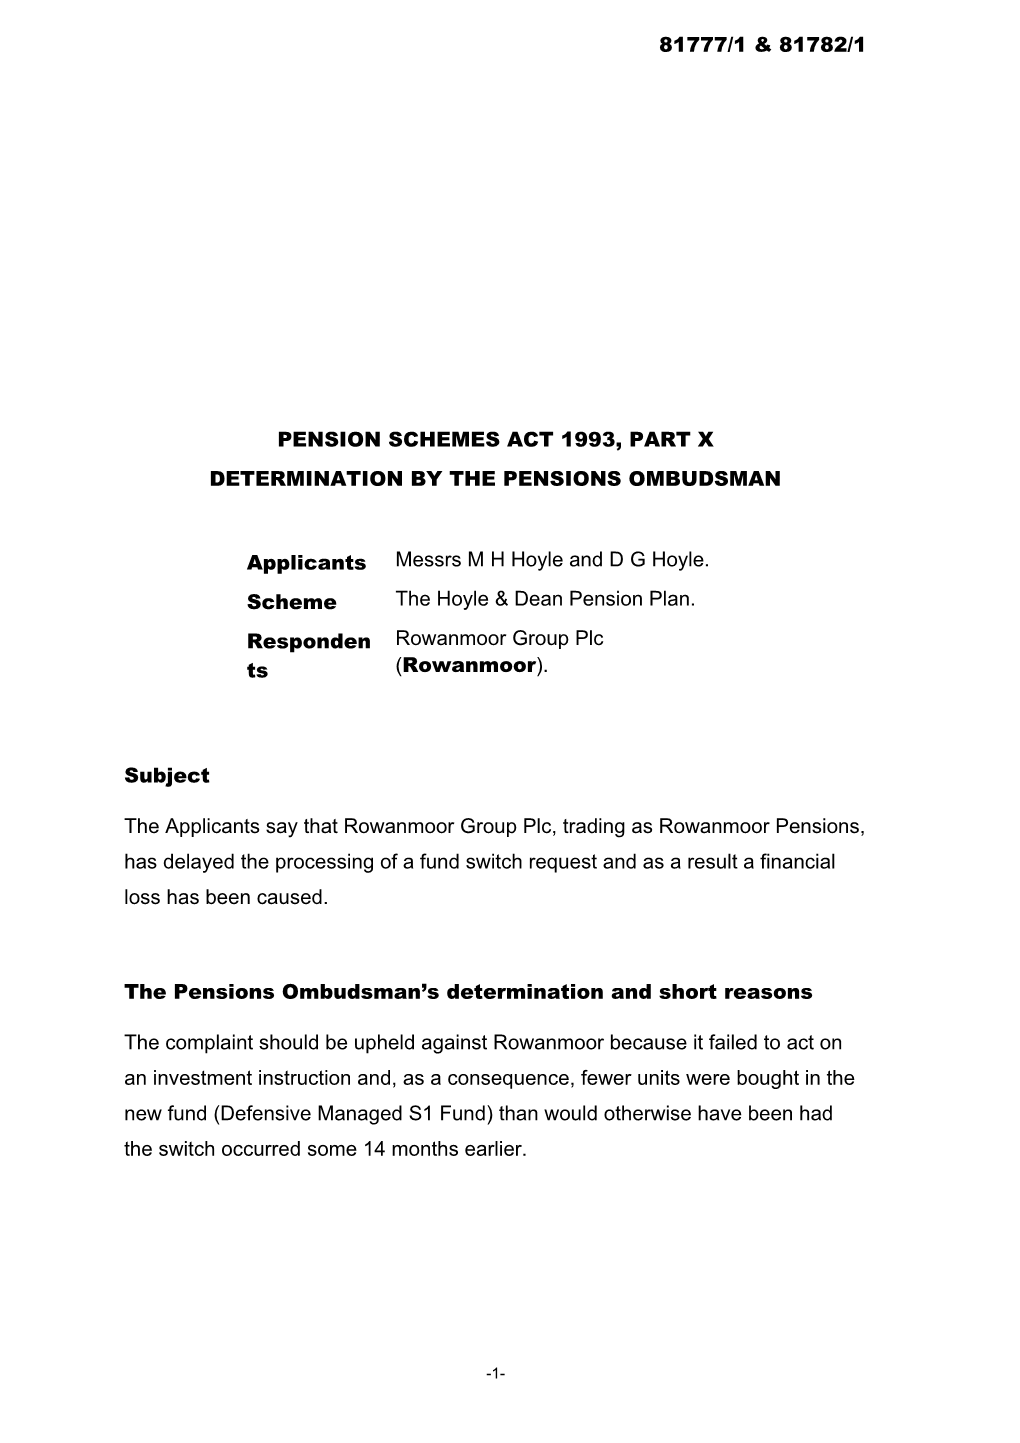 Pension Schemes Act 1993, Part X s56